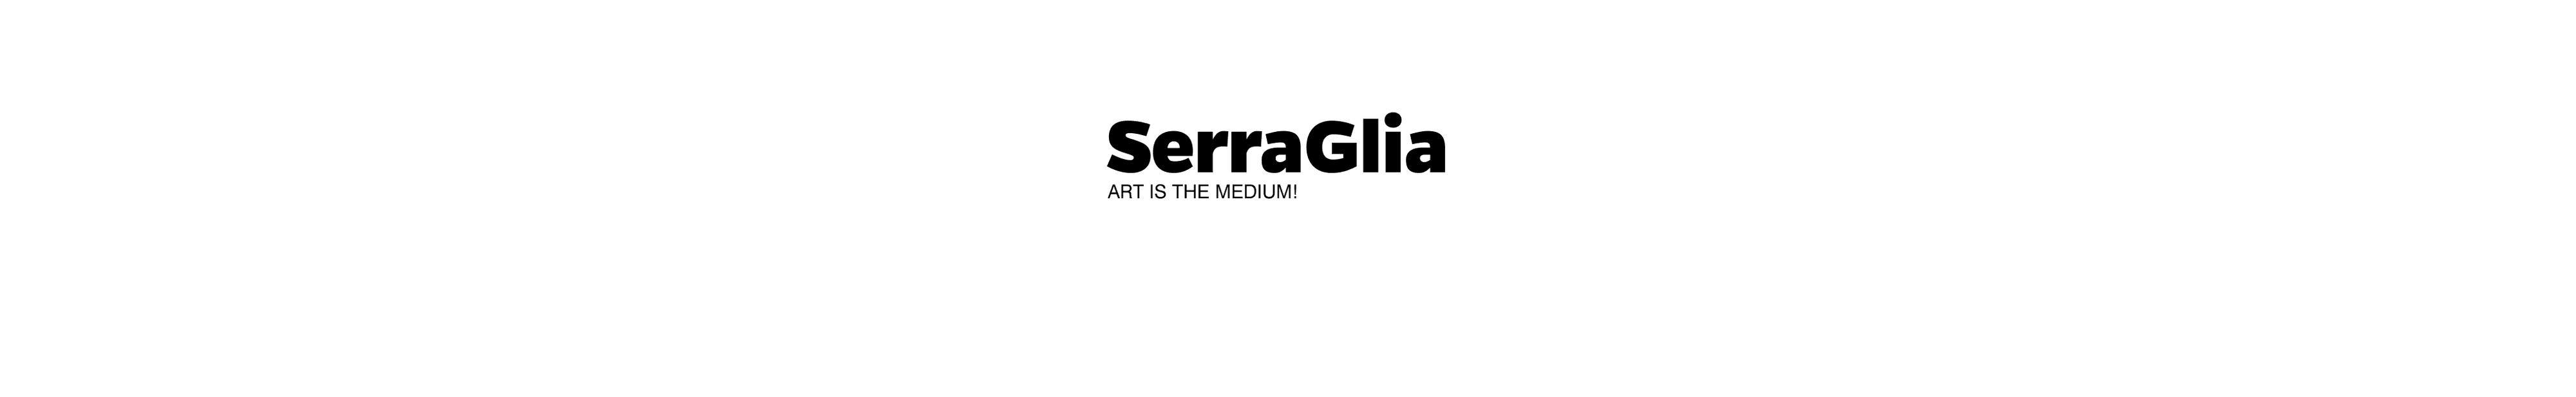 SERRAGLIA banner